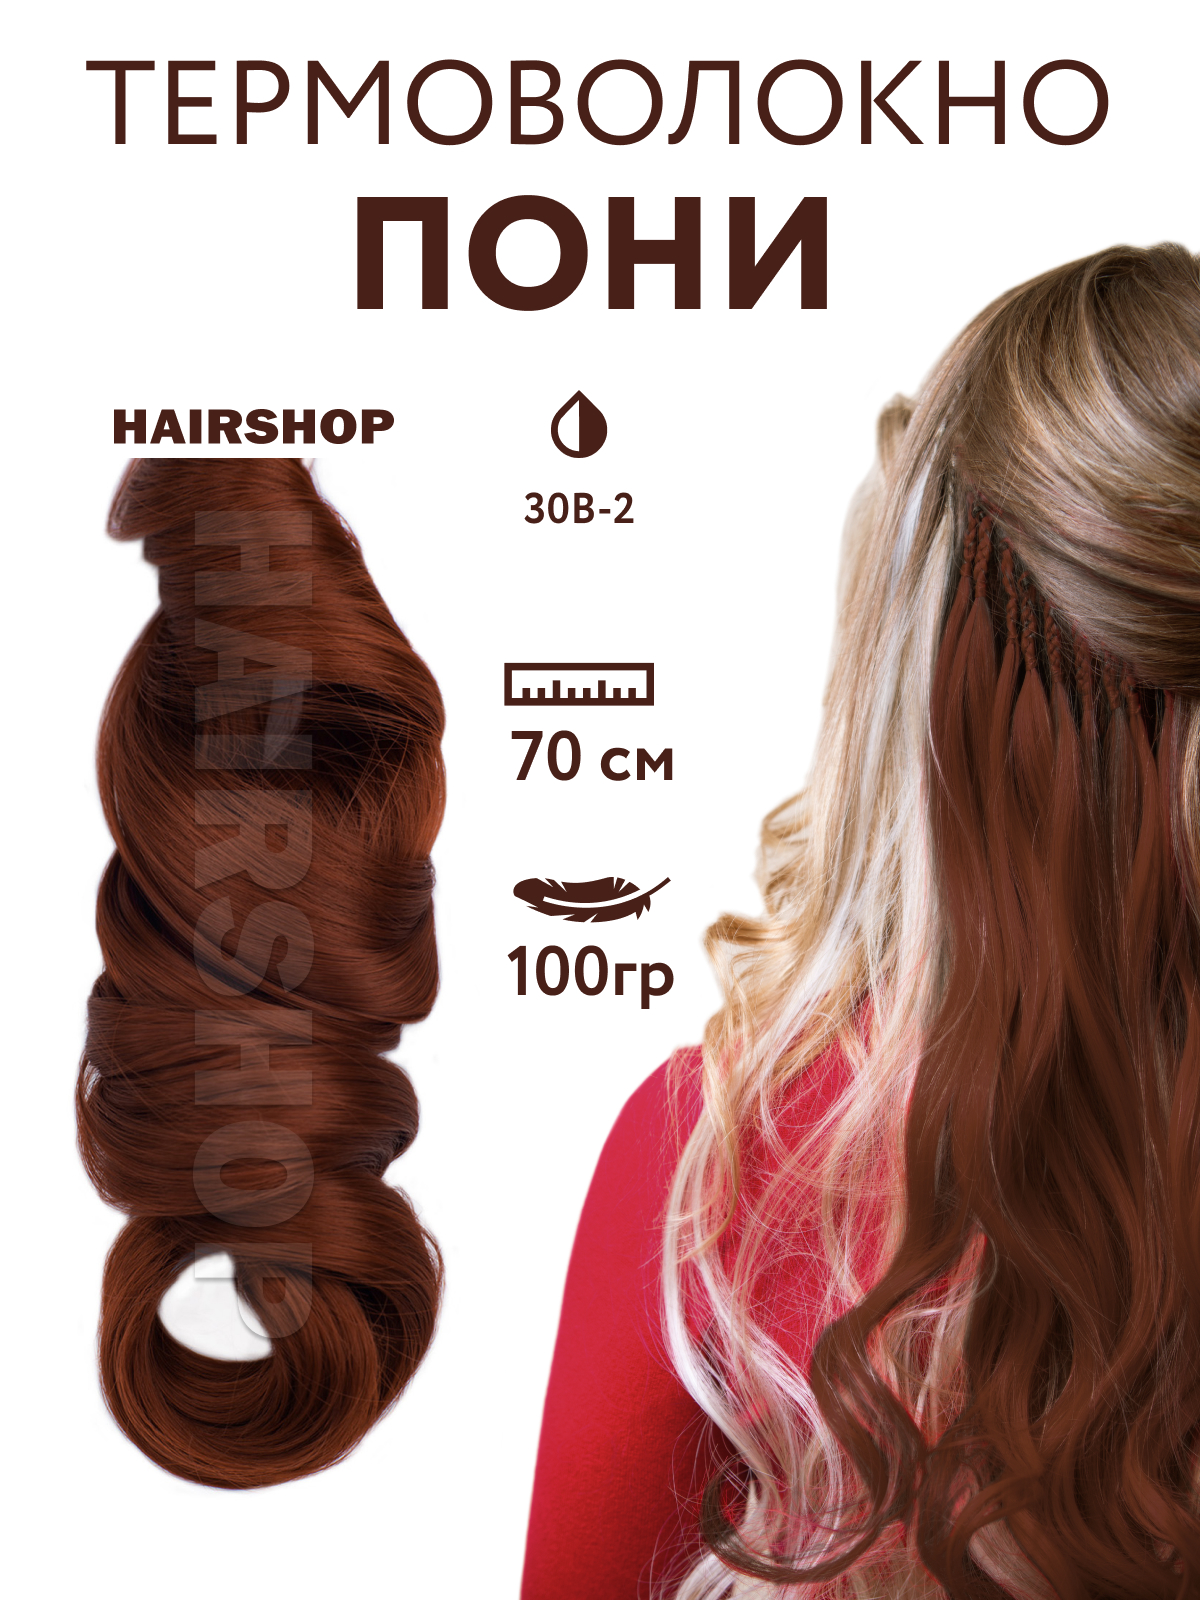 Канекалон HAIRSHOP Пони HairUp для точечного афронаращивания 30B-2 Натурально рыжий 1,4м канекалон hairshop пони hairup для точечного афронаращивания средне русый 1 4м